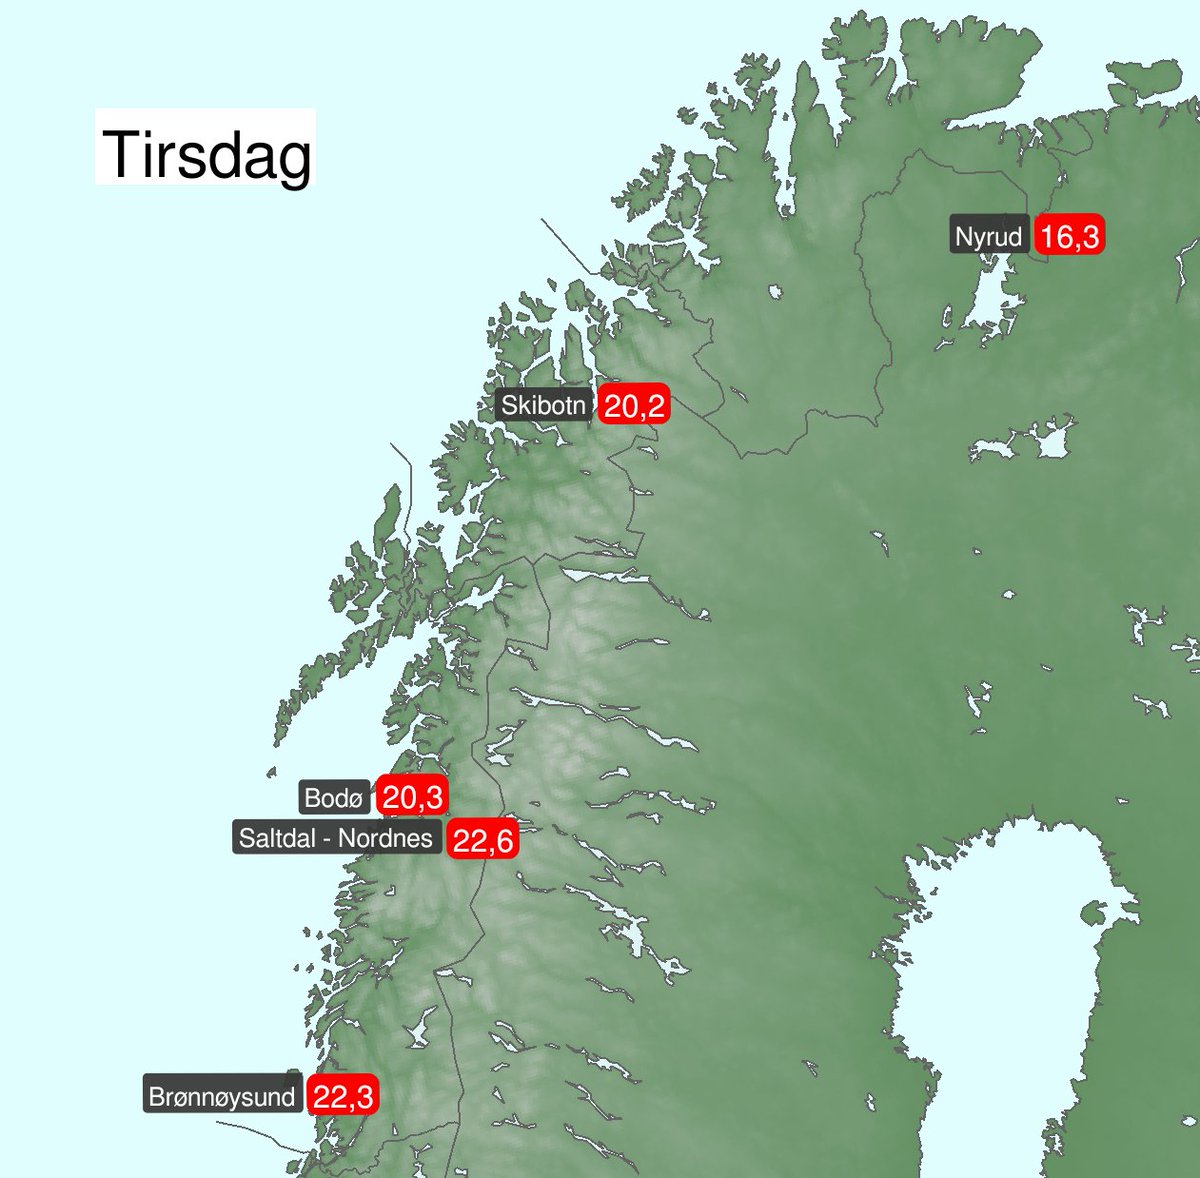 Nå har alle fylker bortsett fra Finnmark fått sin første sommerdag ☀️ Det vil si at temperaturen når 20 grader eller mer.
 
Skibotn skaffet Troms sin første sommerdag i går mens Nordland fikk sin andre 🌡️

Under ser du høyeste temperatur utvalgte steder👇